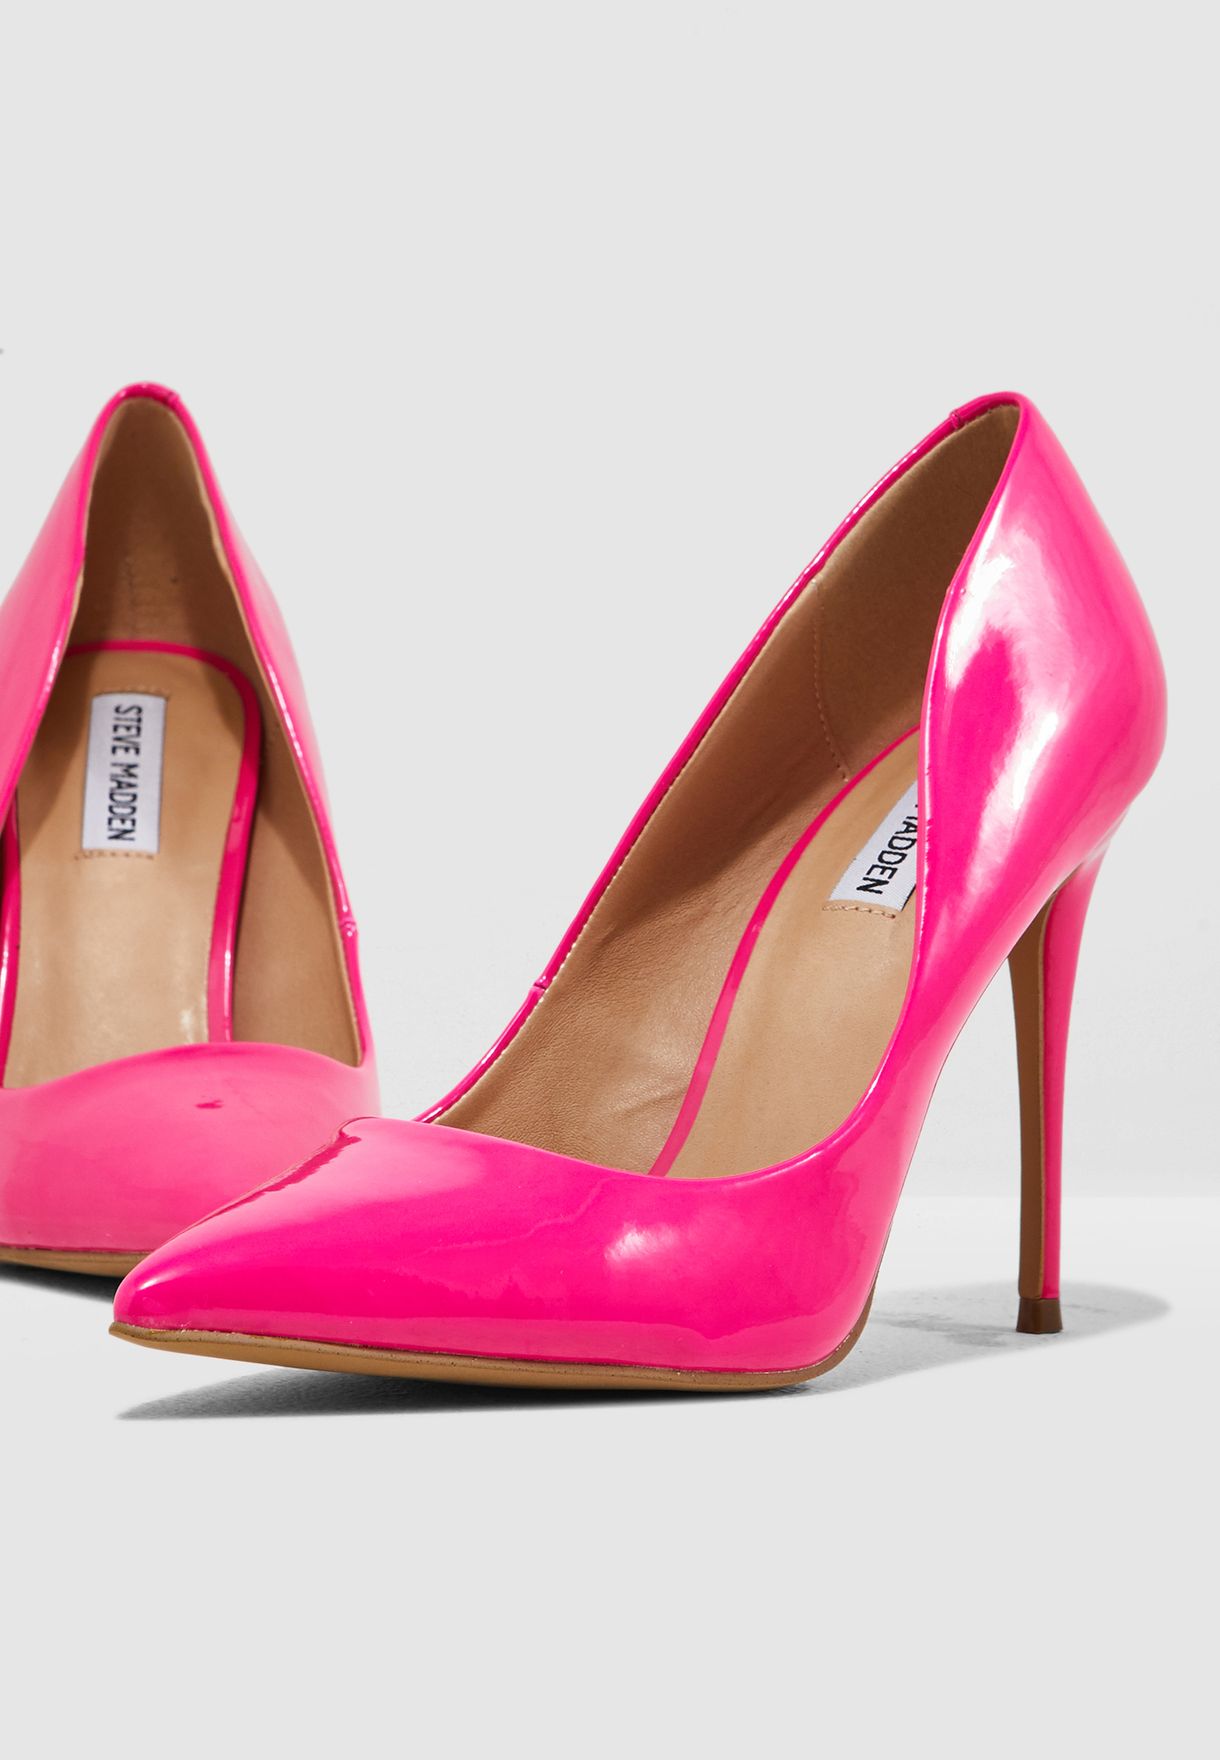 steve madden pink heels